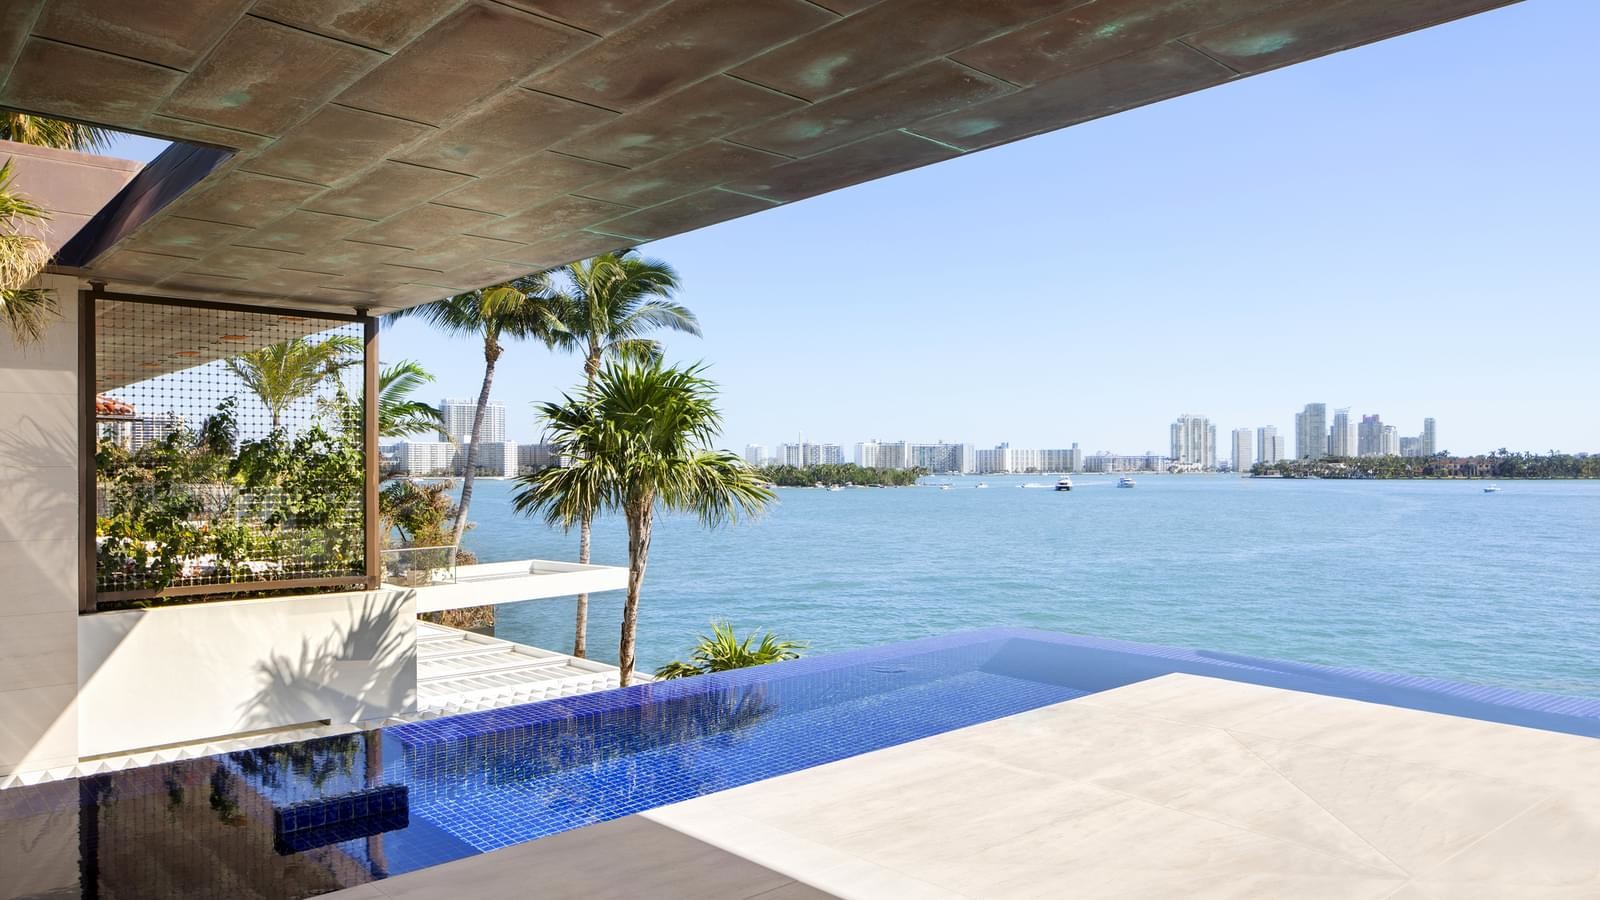 Villa in Miami by SAOTA studio